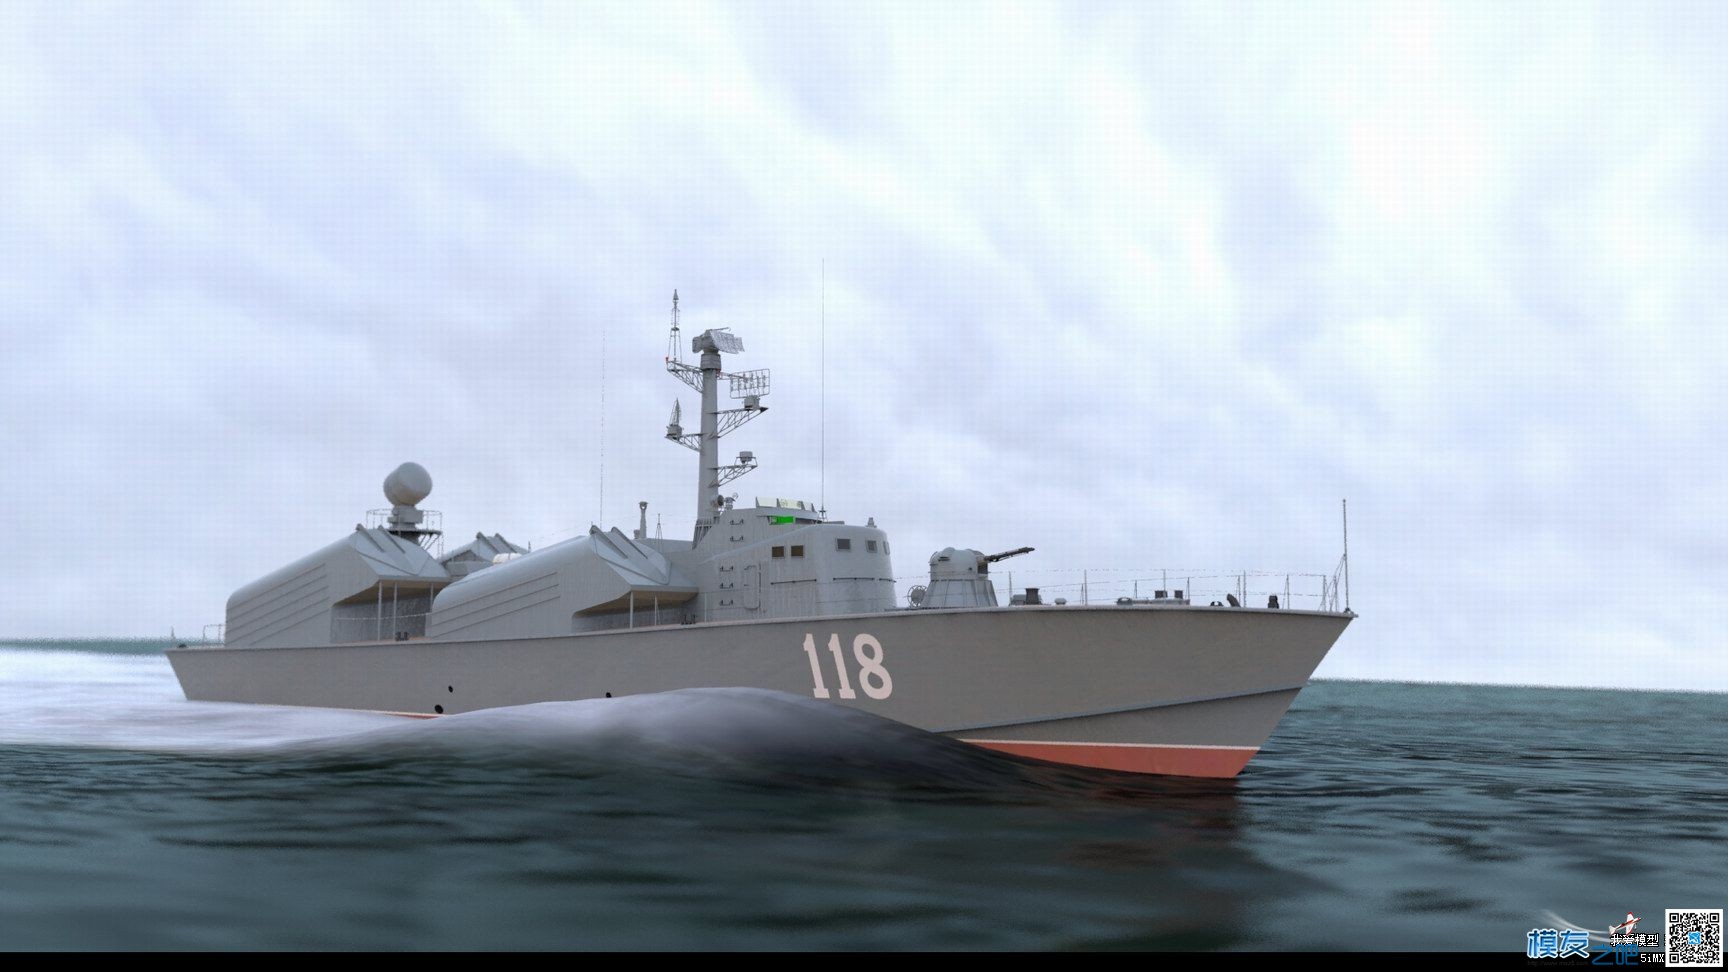 【偶尔飞一次】制作【俄罗斯黄蜂3型导弹艇】模型 图纸 作者:漂洋过海 4066 